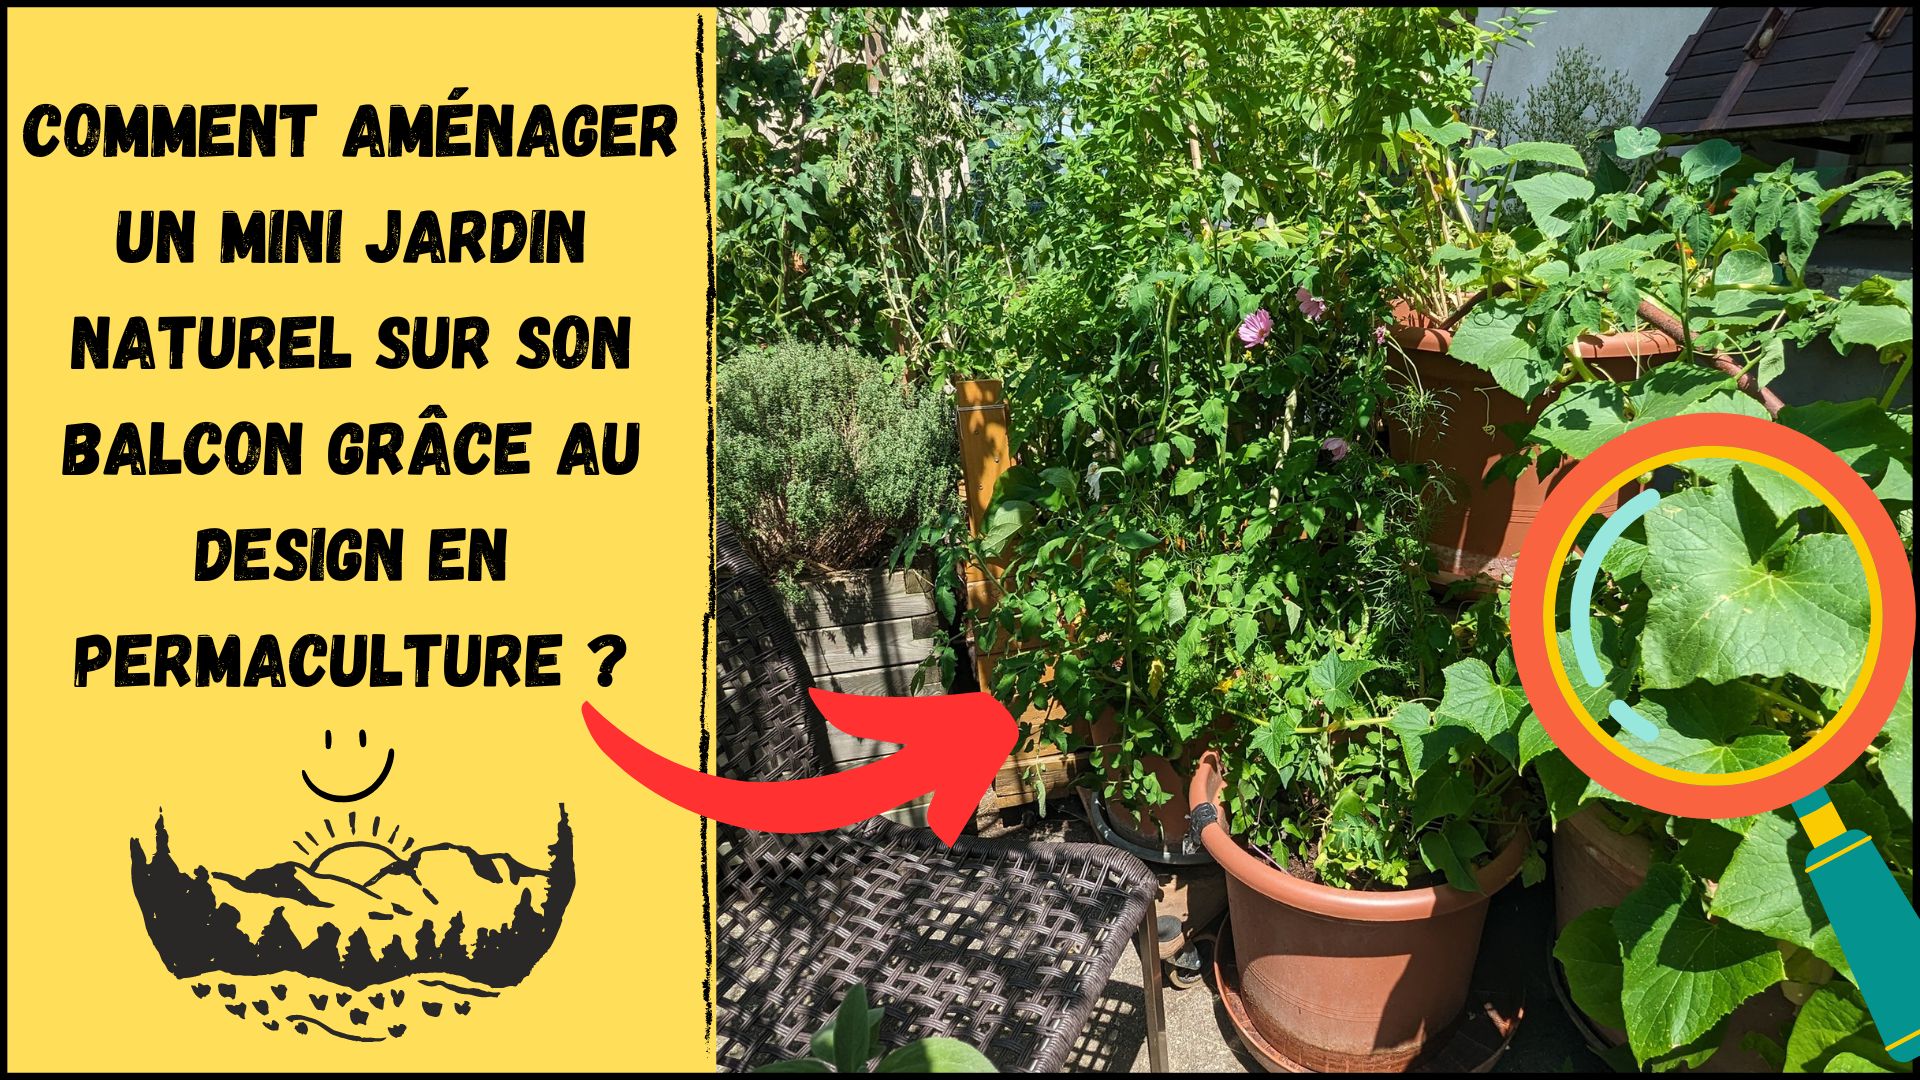 Comment aménager un mini jardin naturel sur son balcon grâce au design en permaculture ?